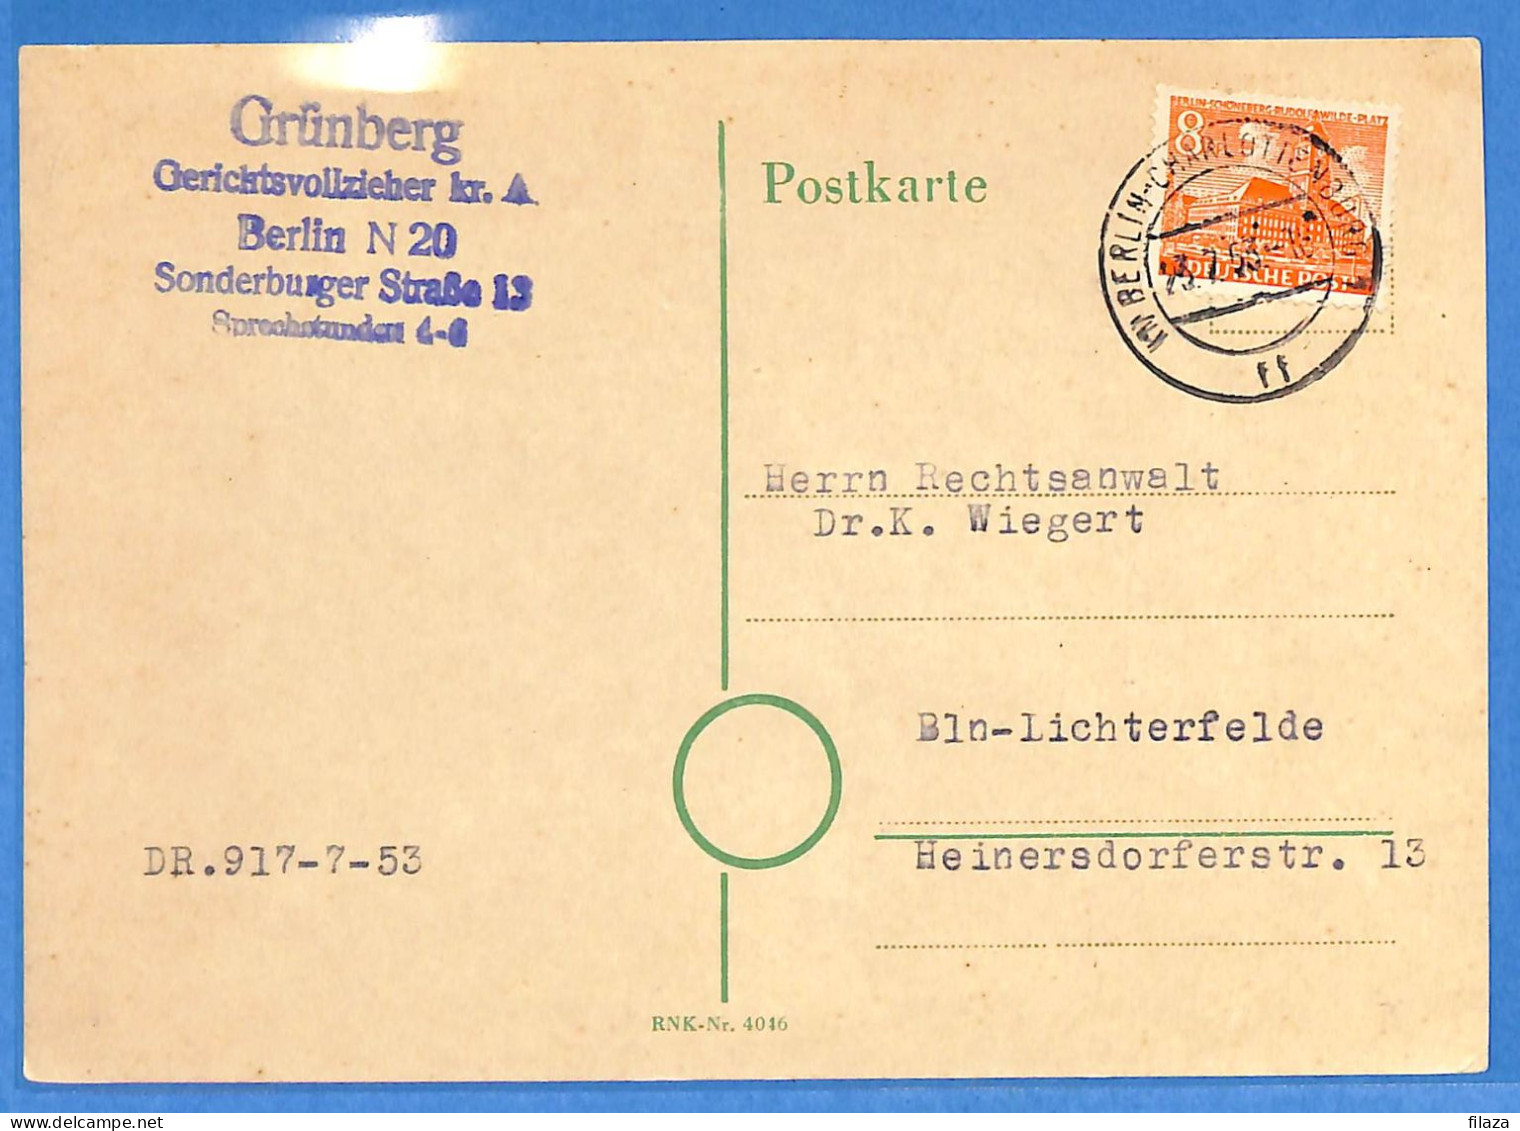 Berlin West 1953 - Carte Postale De Berlin - G33029 - Covers & Documents